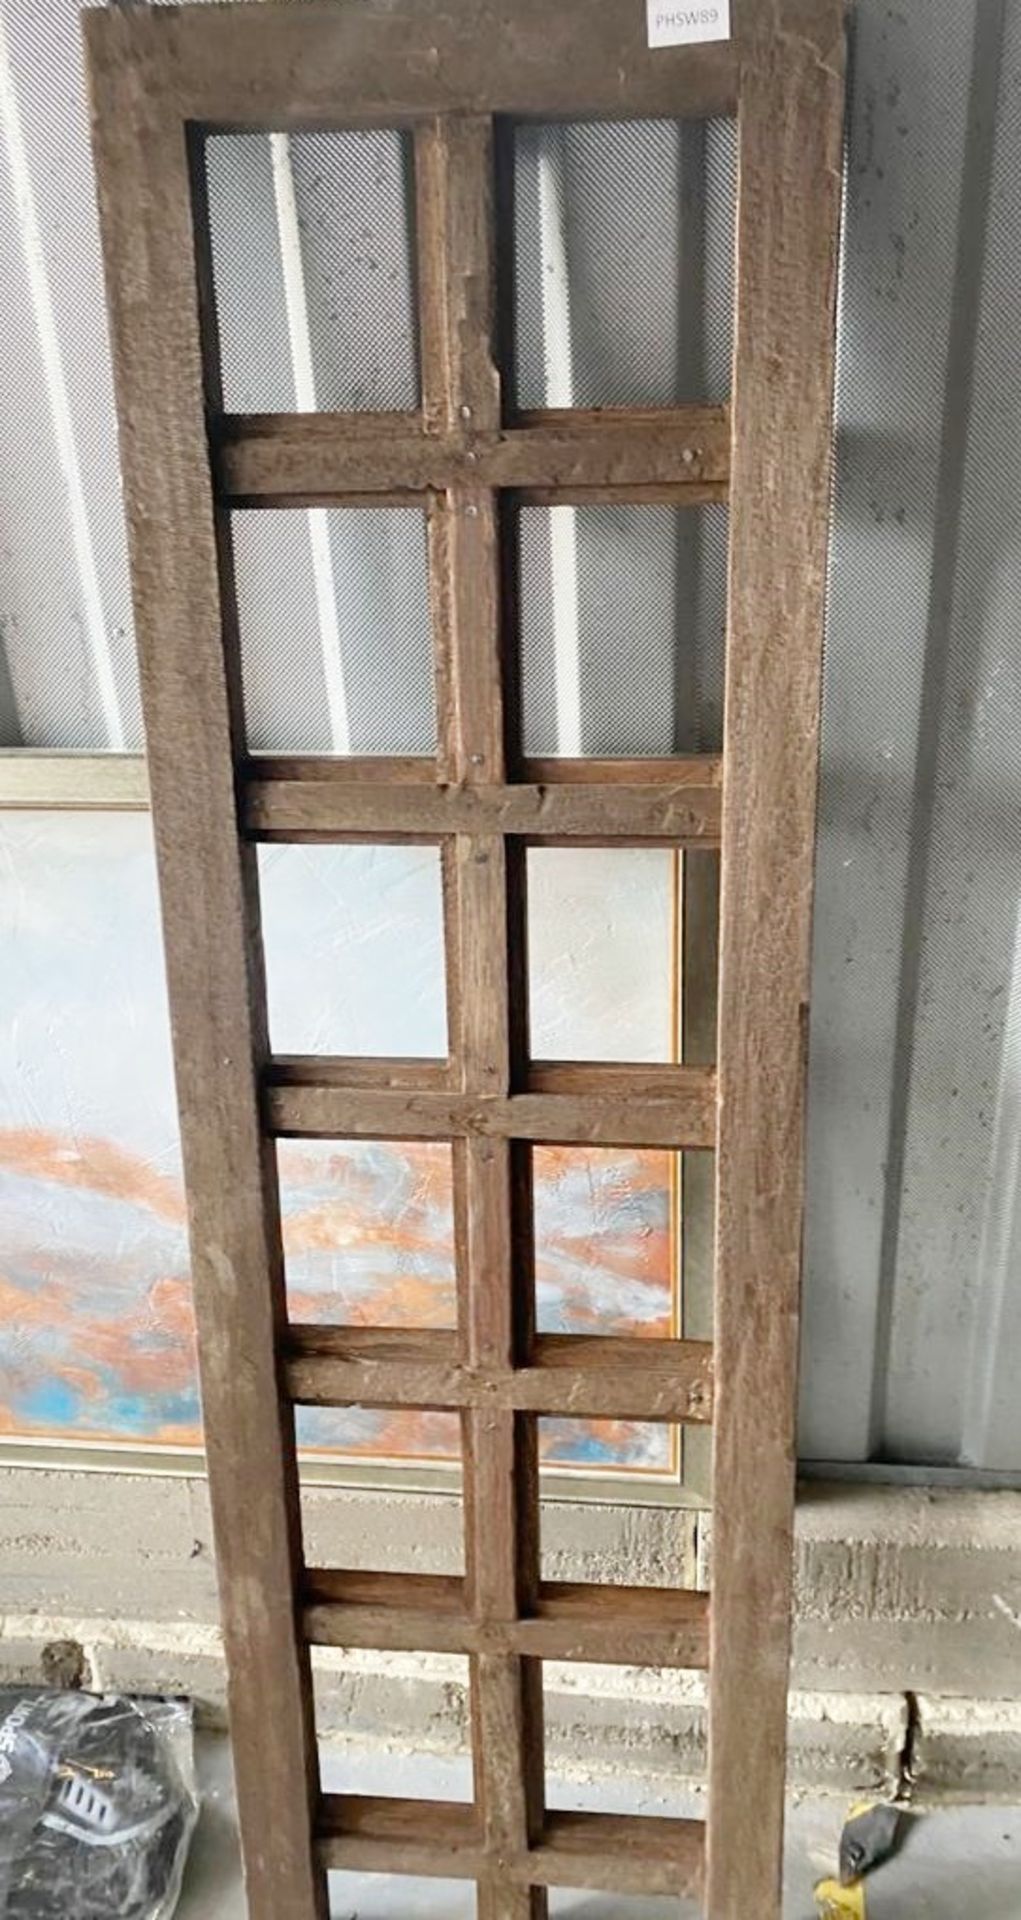 4 x Meranti Wood Wall Panels - Dimensions (mm): 520x170x100